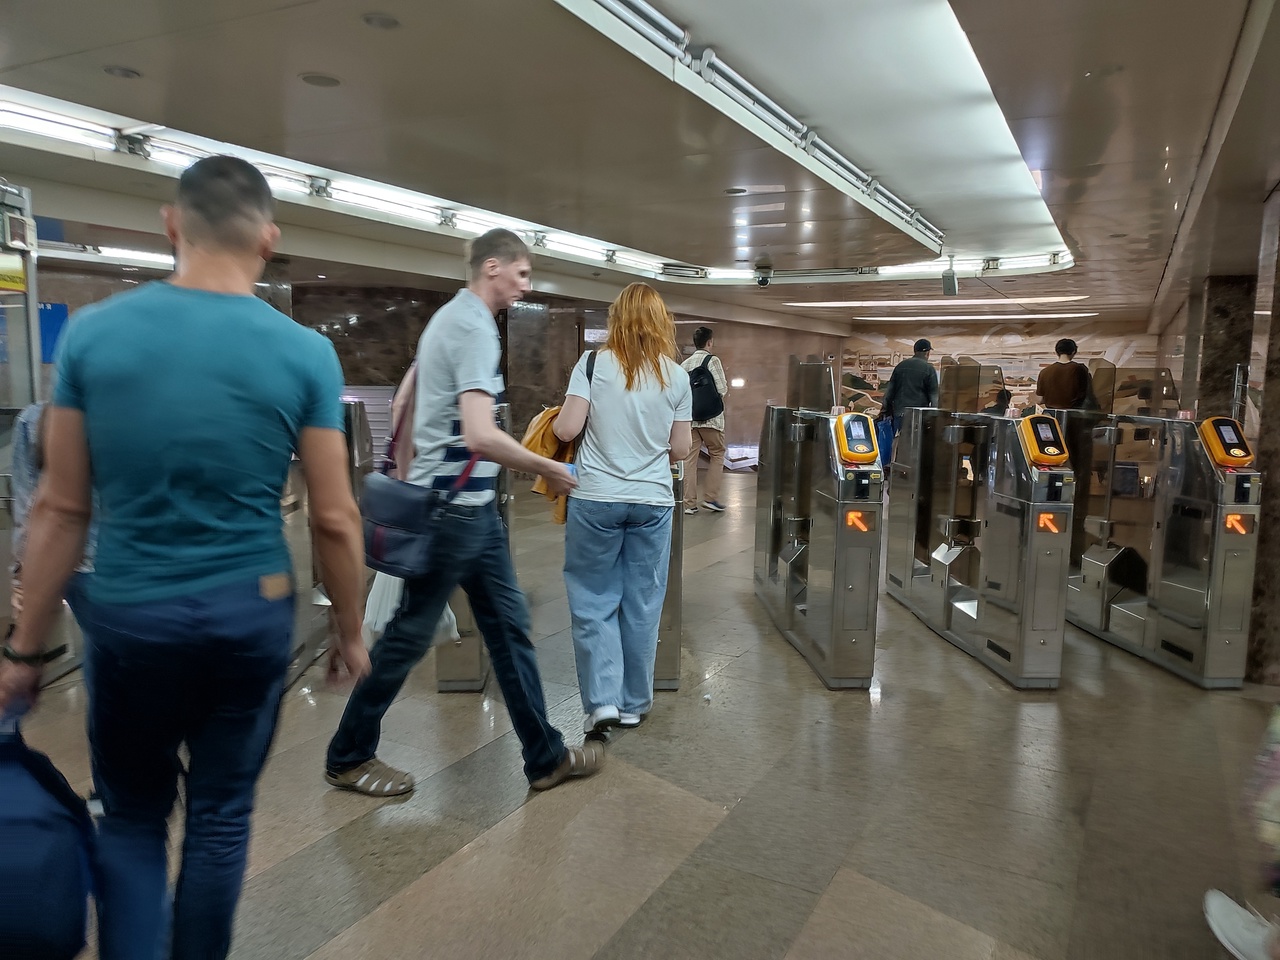 Оплатить проезд в нижегородском метро можно будет по-новому